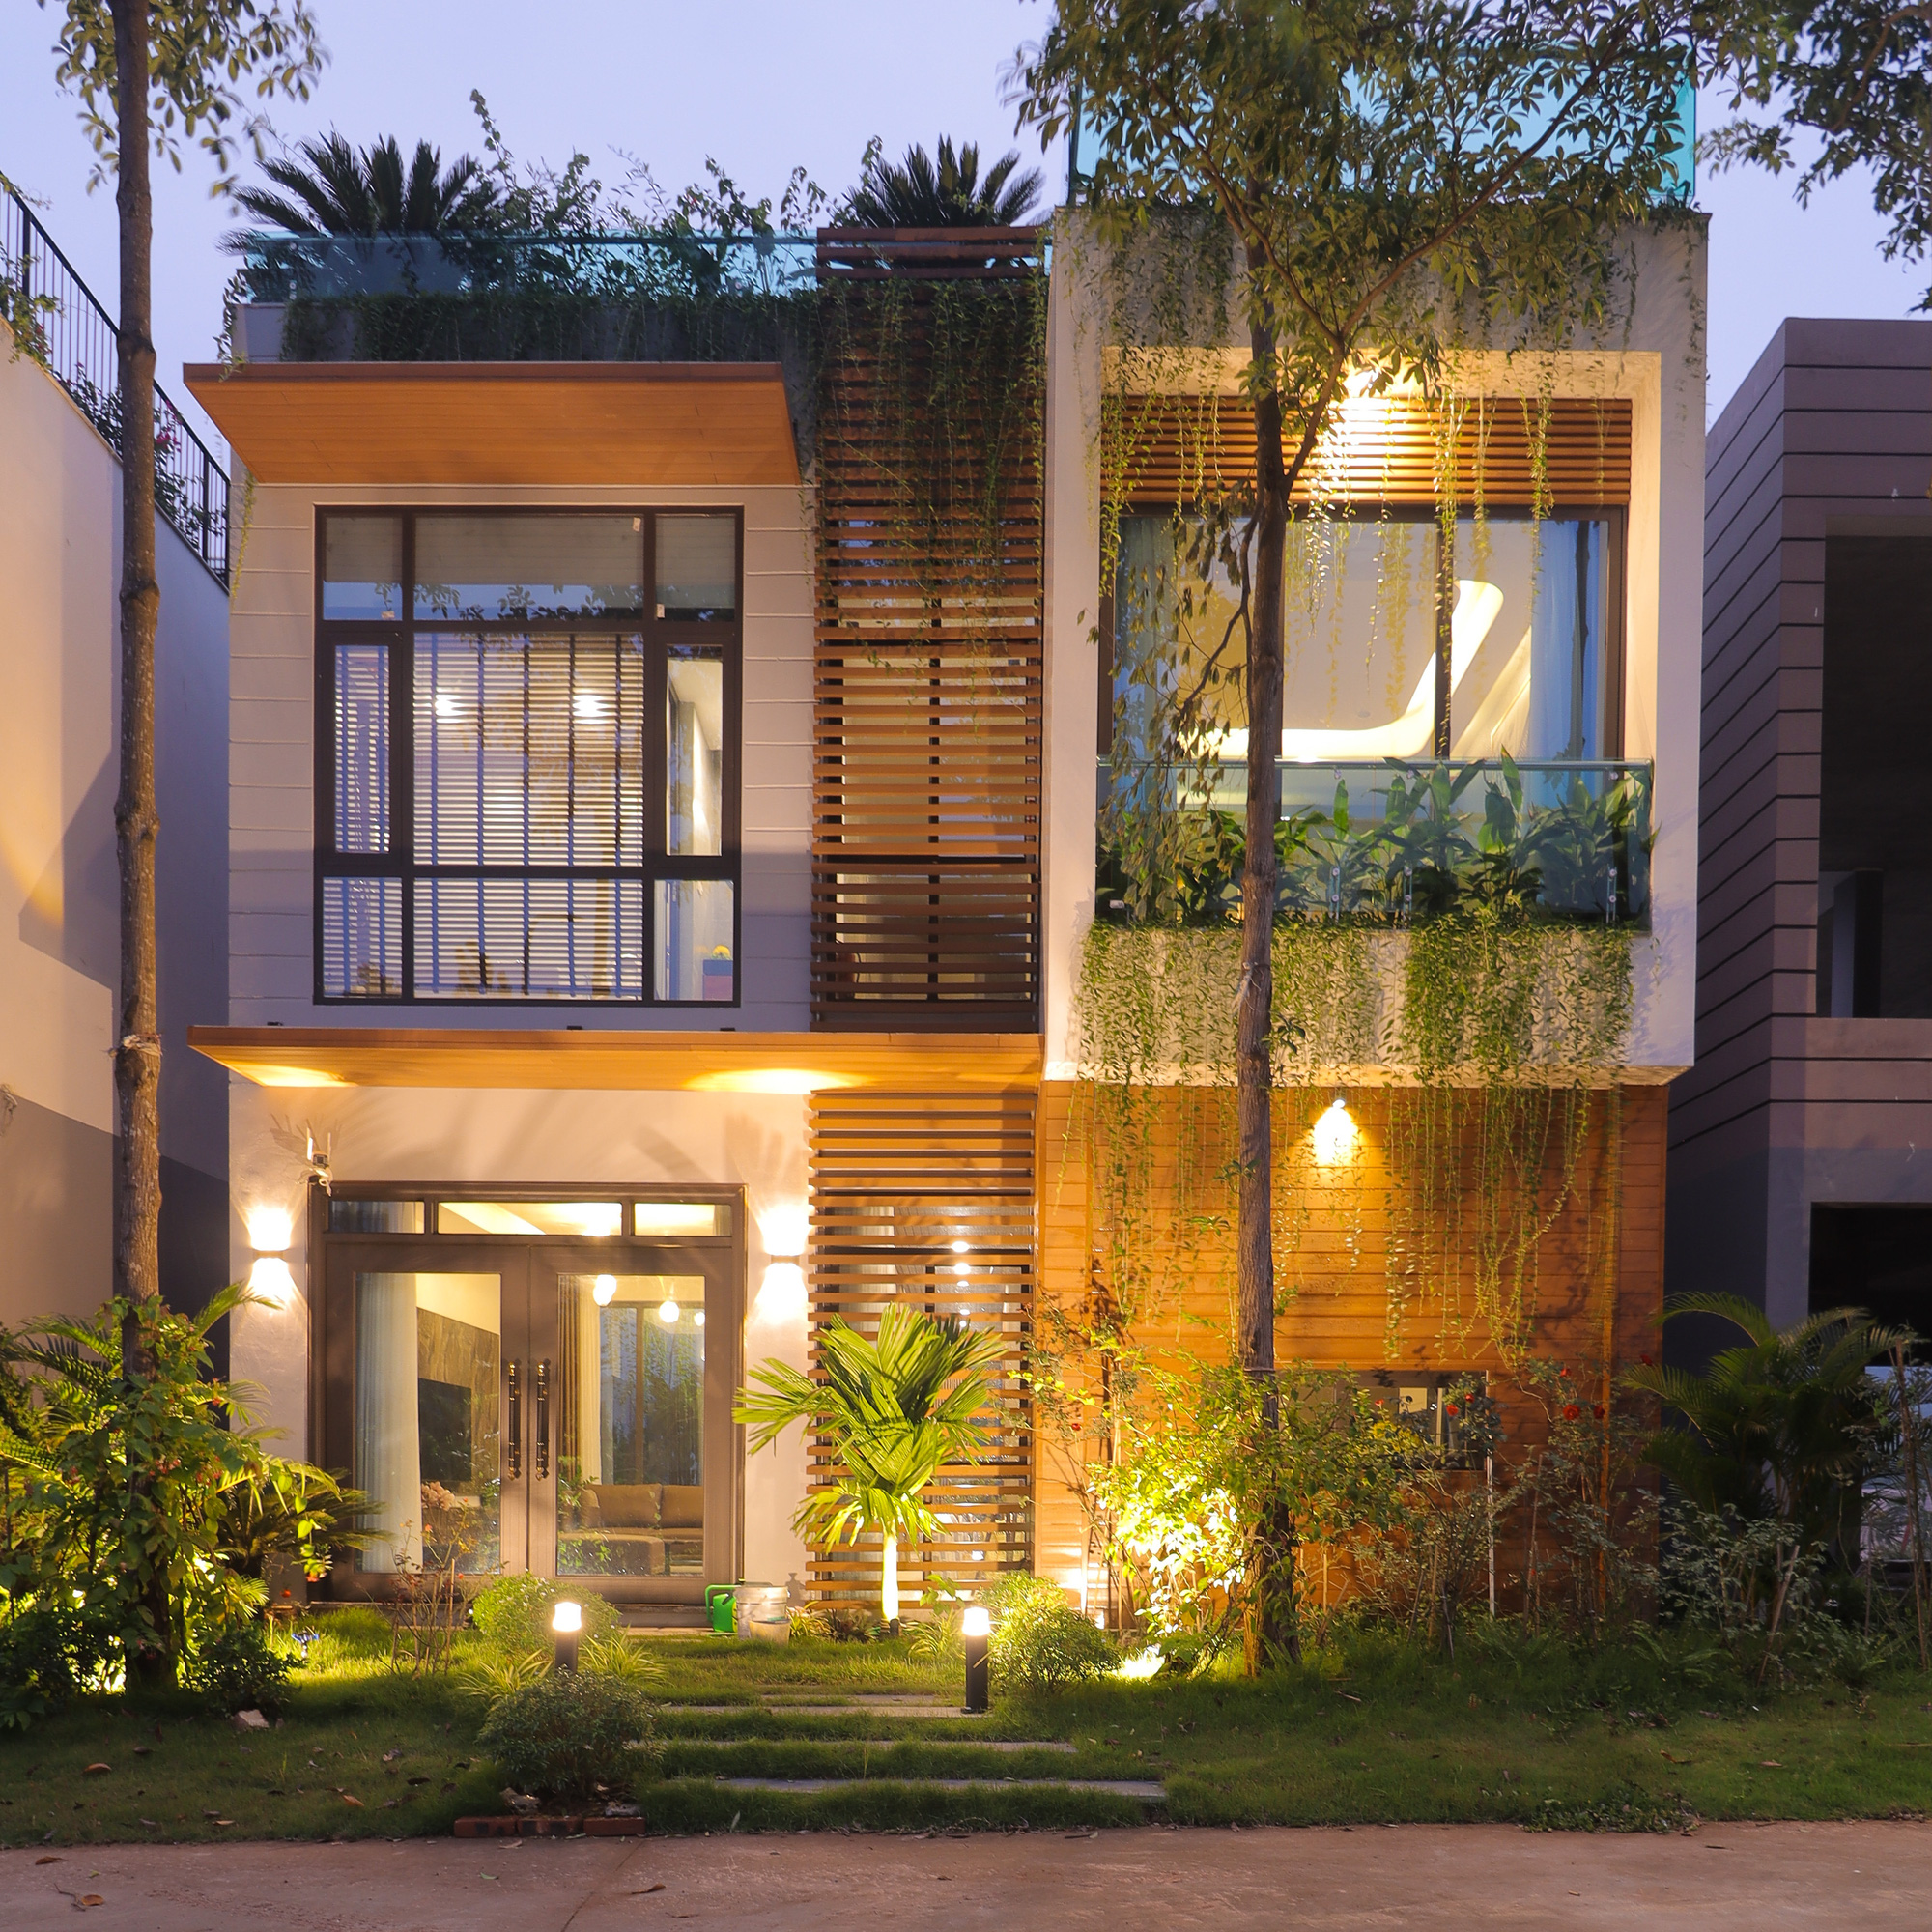 Căn nhà nhiều cây xanh với mảnh vườn bé xinh ở ngoại thành Hà Nội có chi phí hoàn thiện 3 tỷ đồng - Ảnh 1.